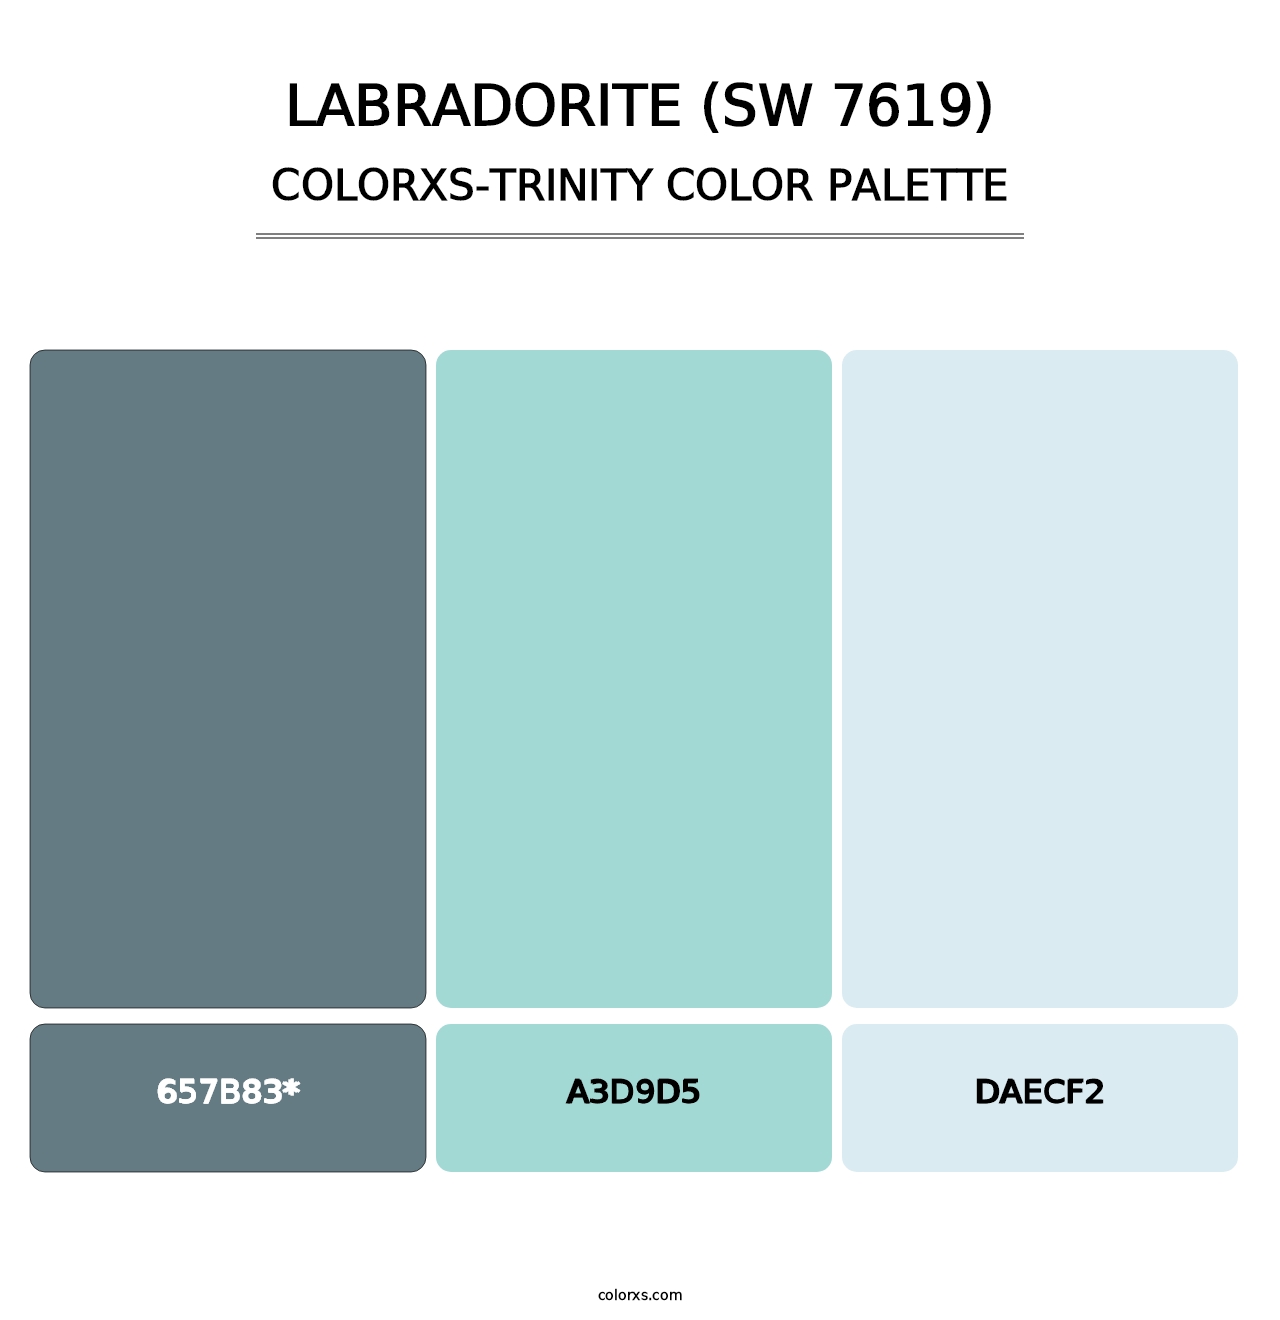 Labradorite (SW 7619) - Colorxs Trinity Palette